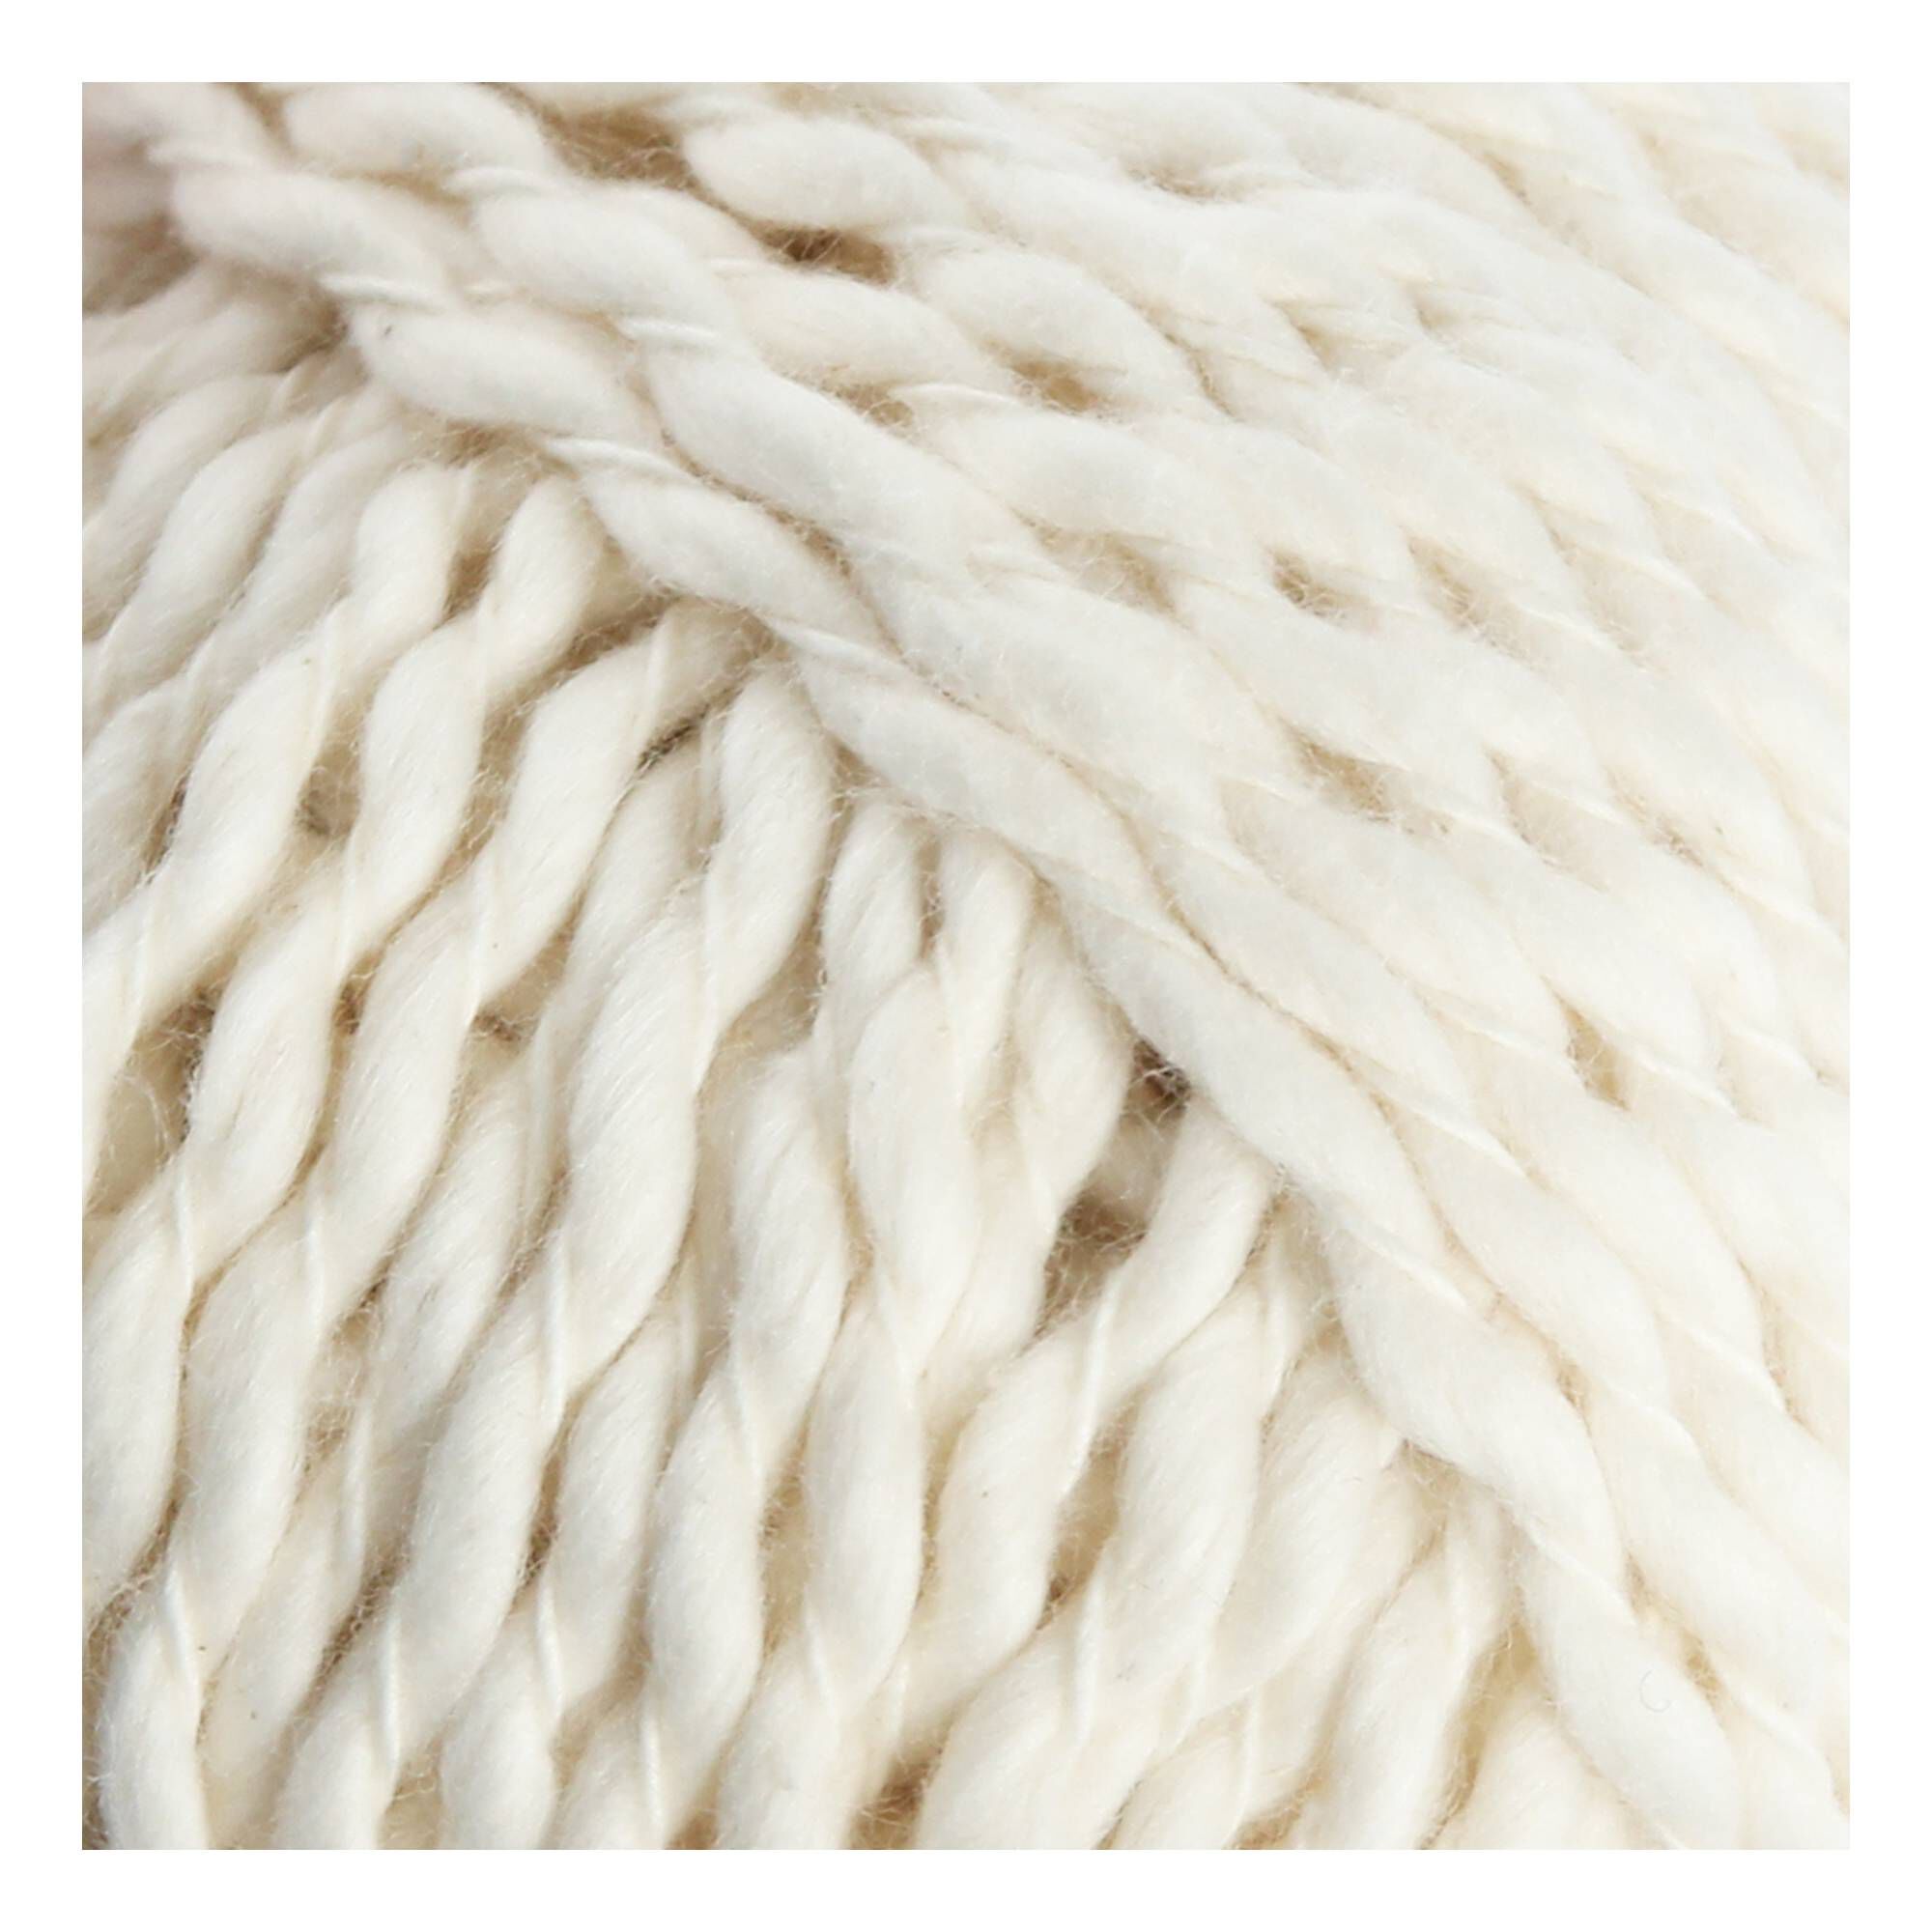 Knitcraft Cream Wavy Days Yarn 50g | Hobbycraft